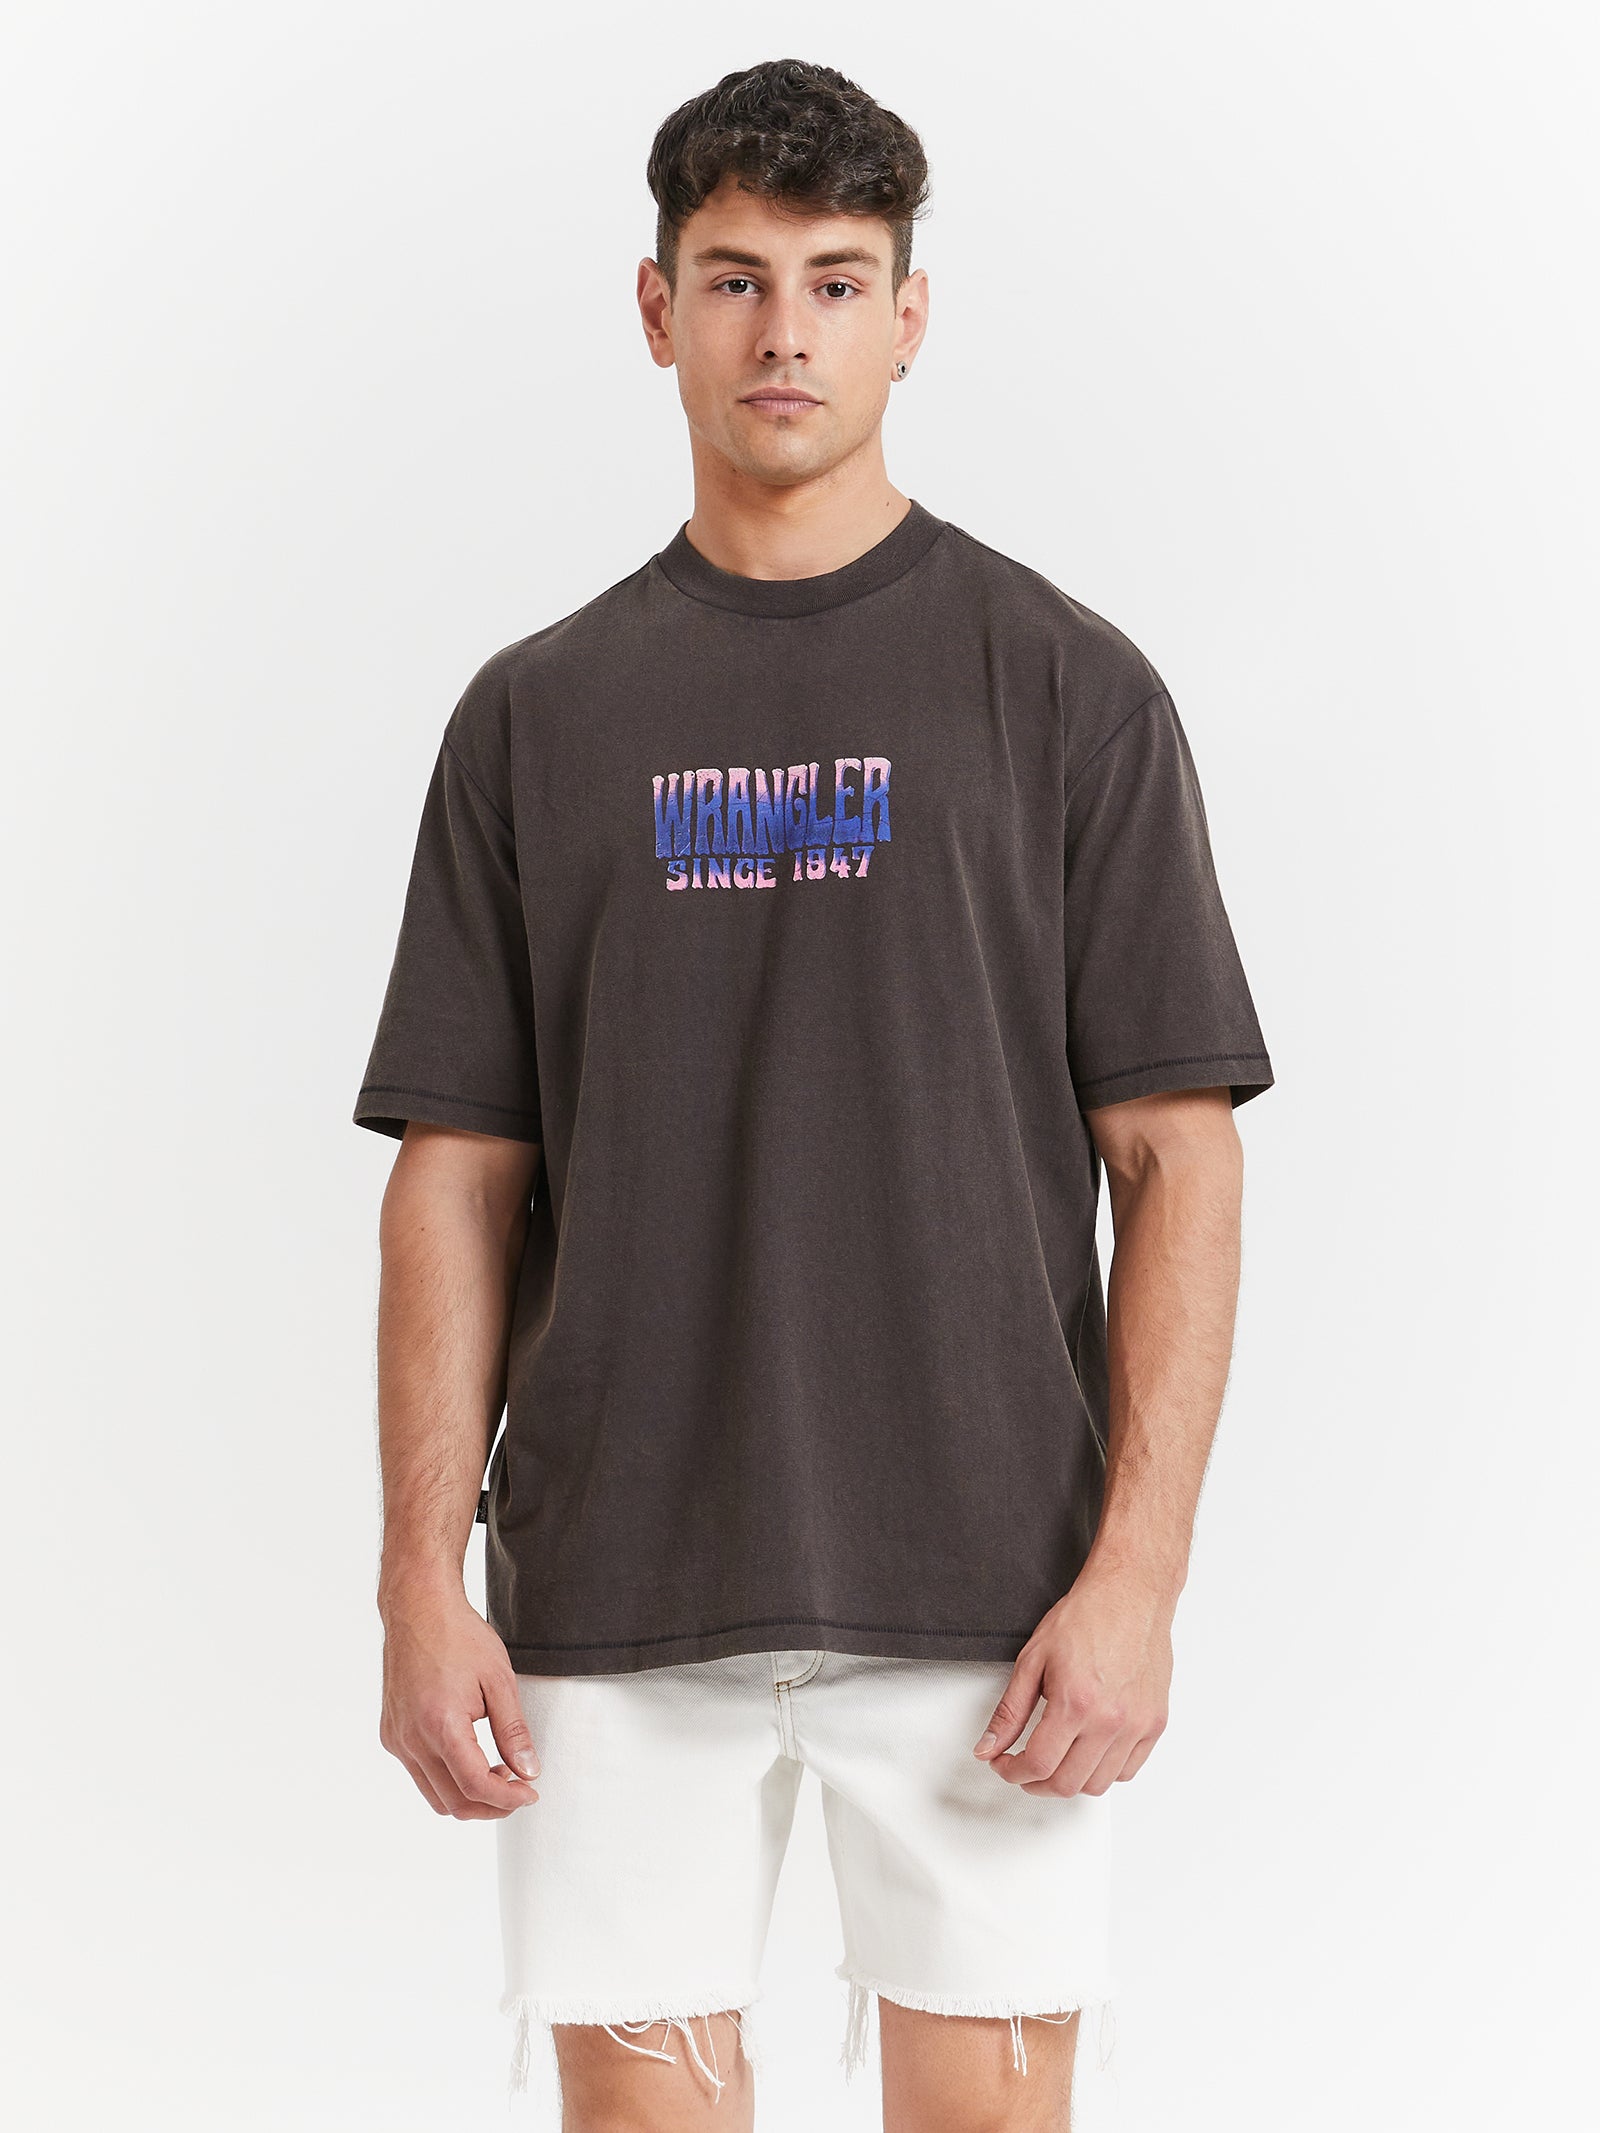 Mind Mirage Store Slacker - Worn T-Shirt Glue in Black